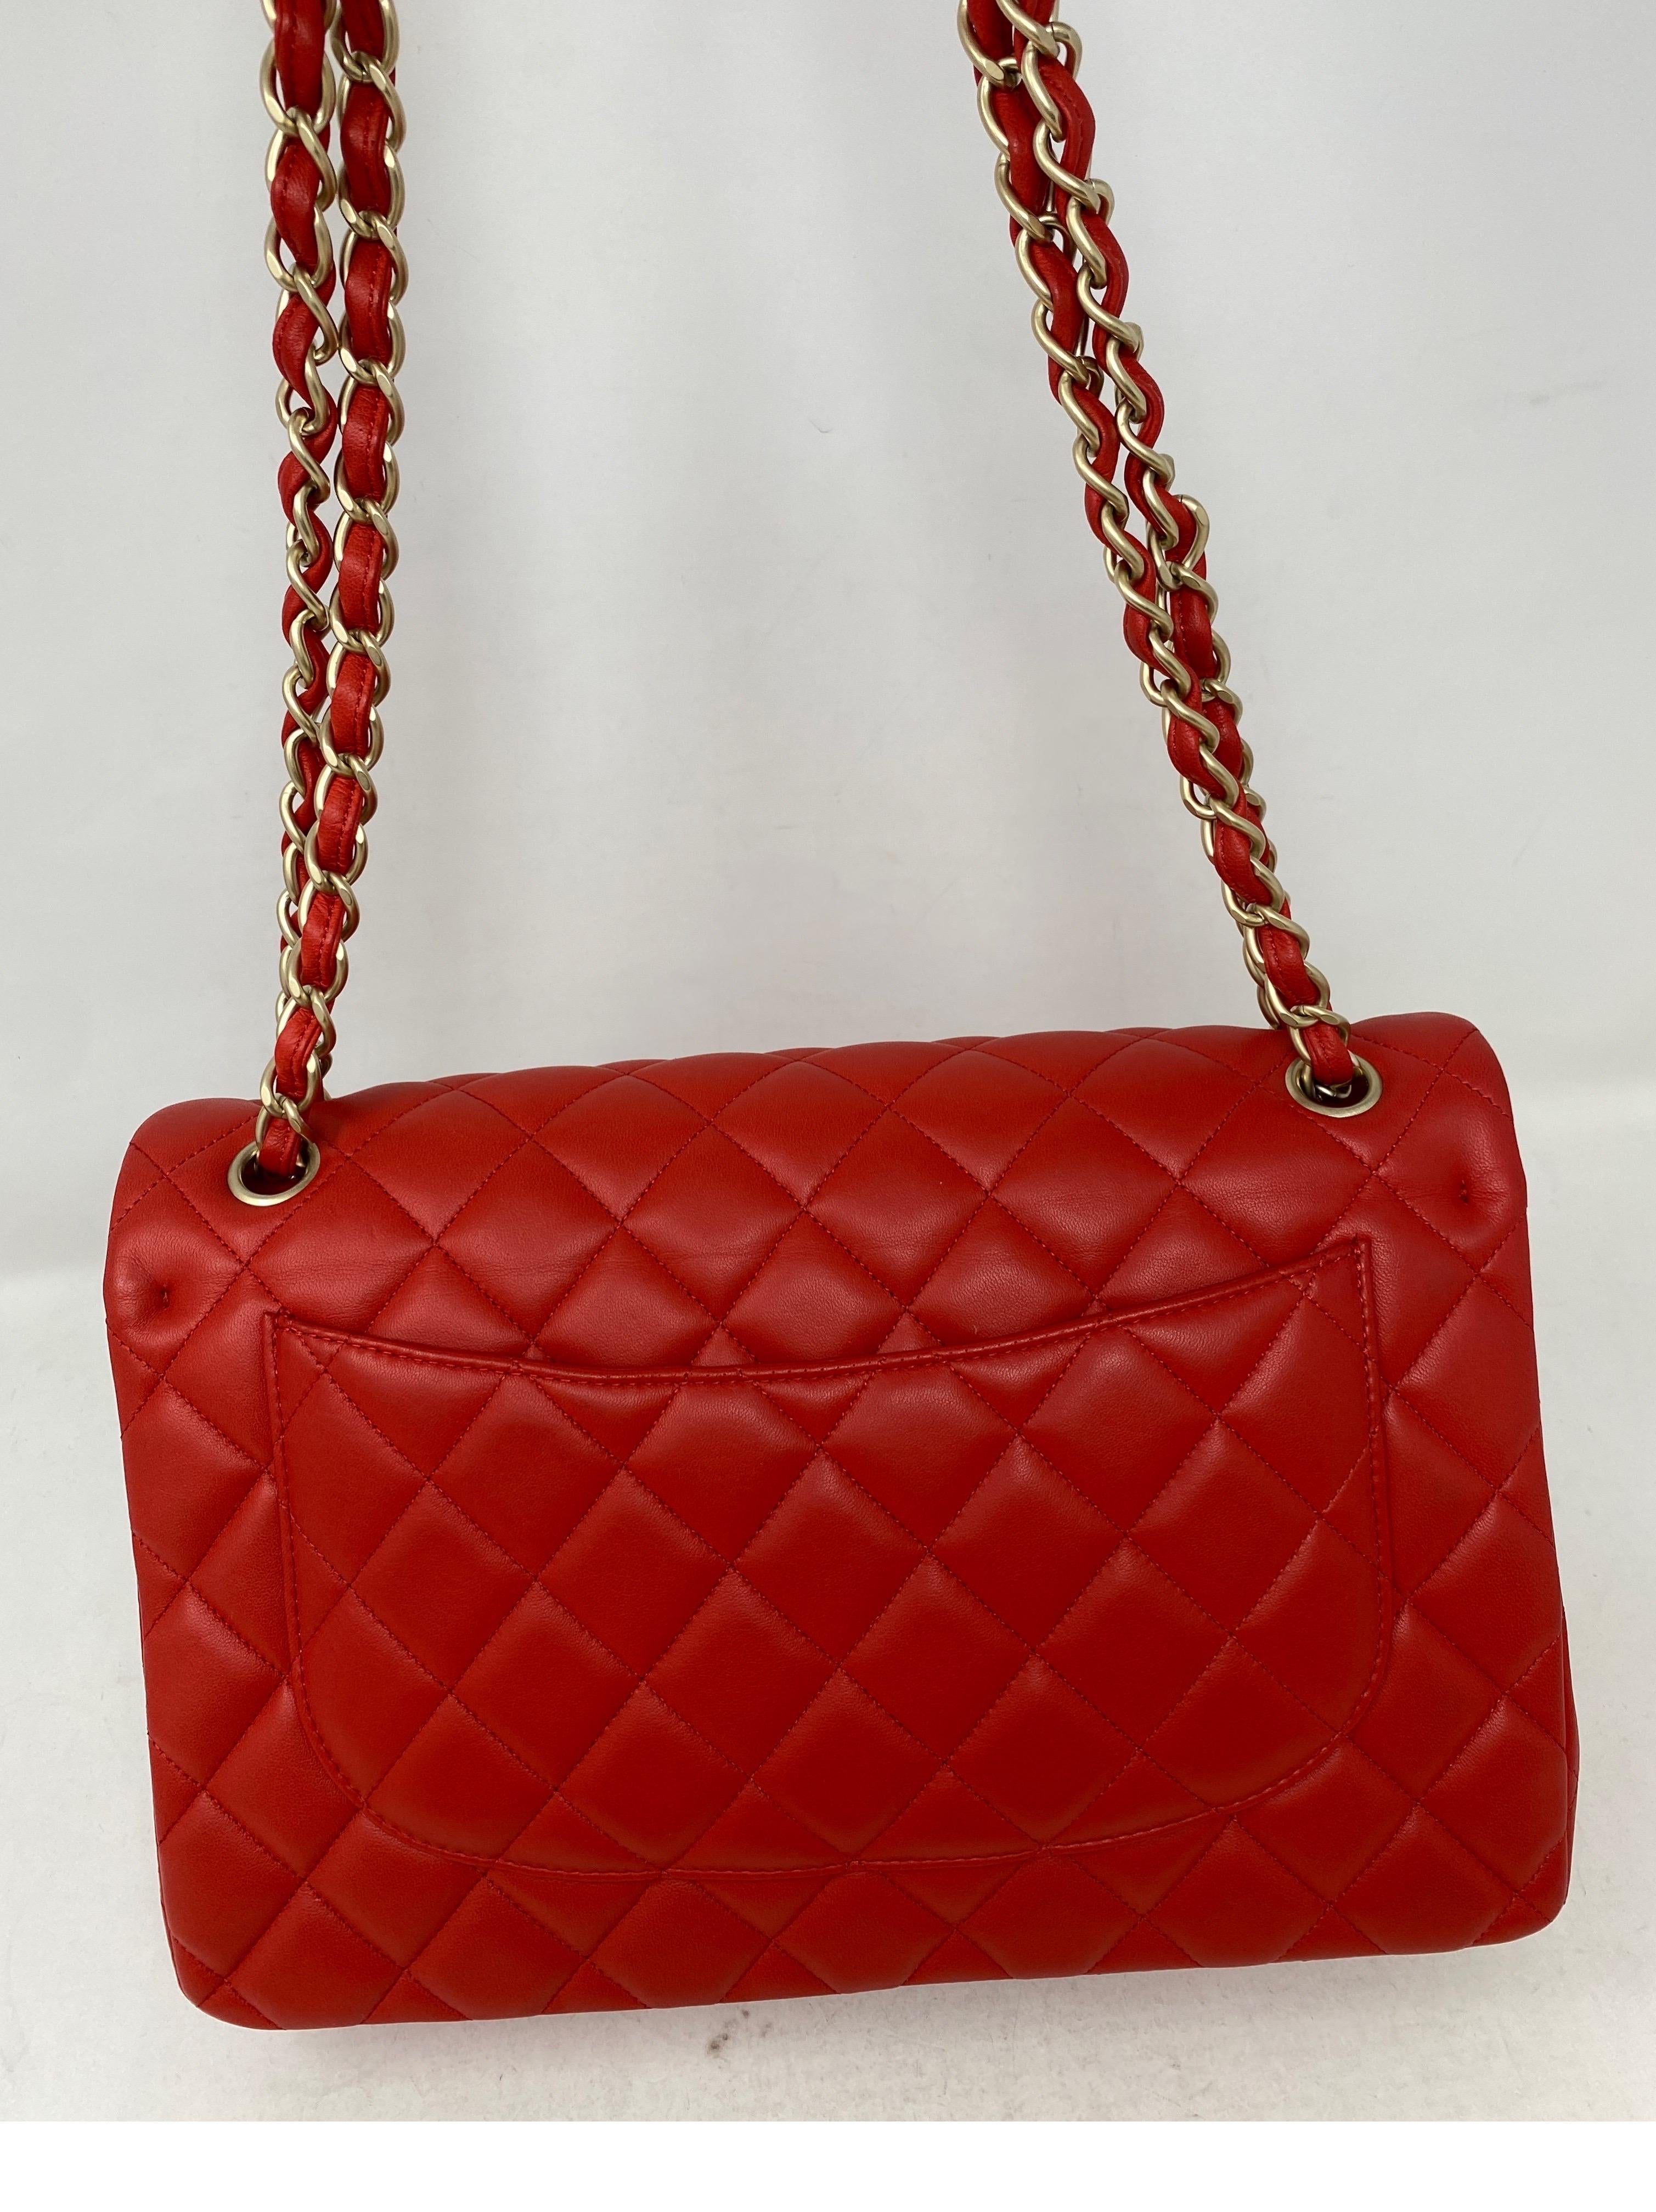 Chanel Red Jumbo Bag  13